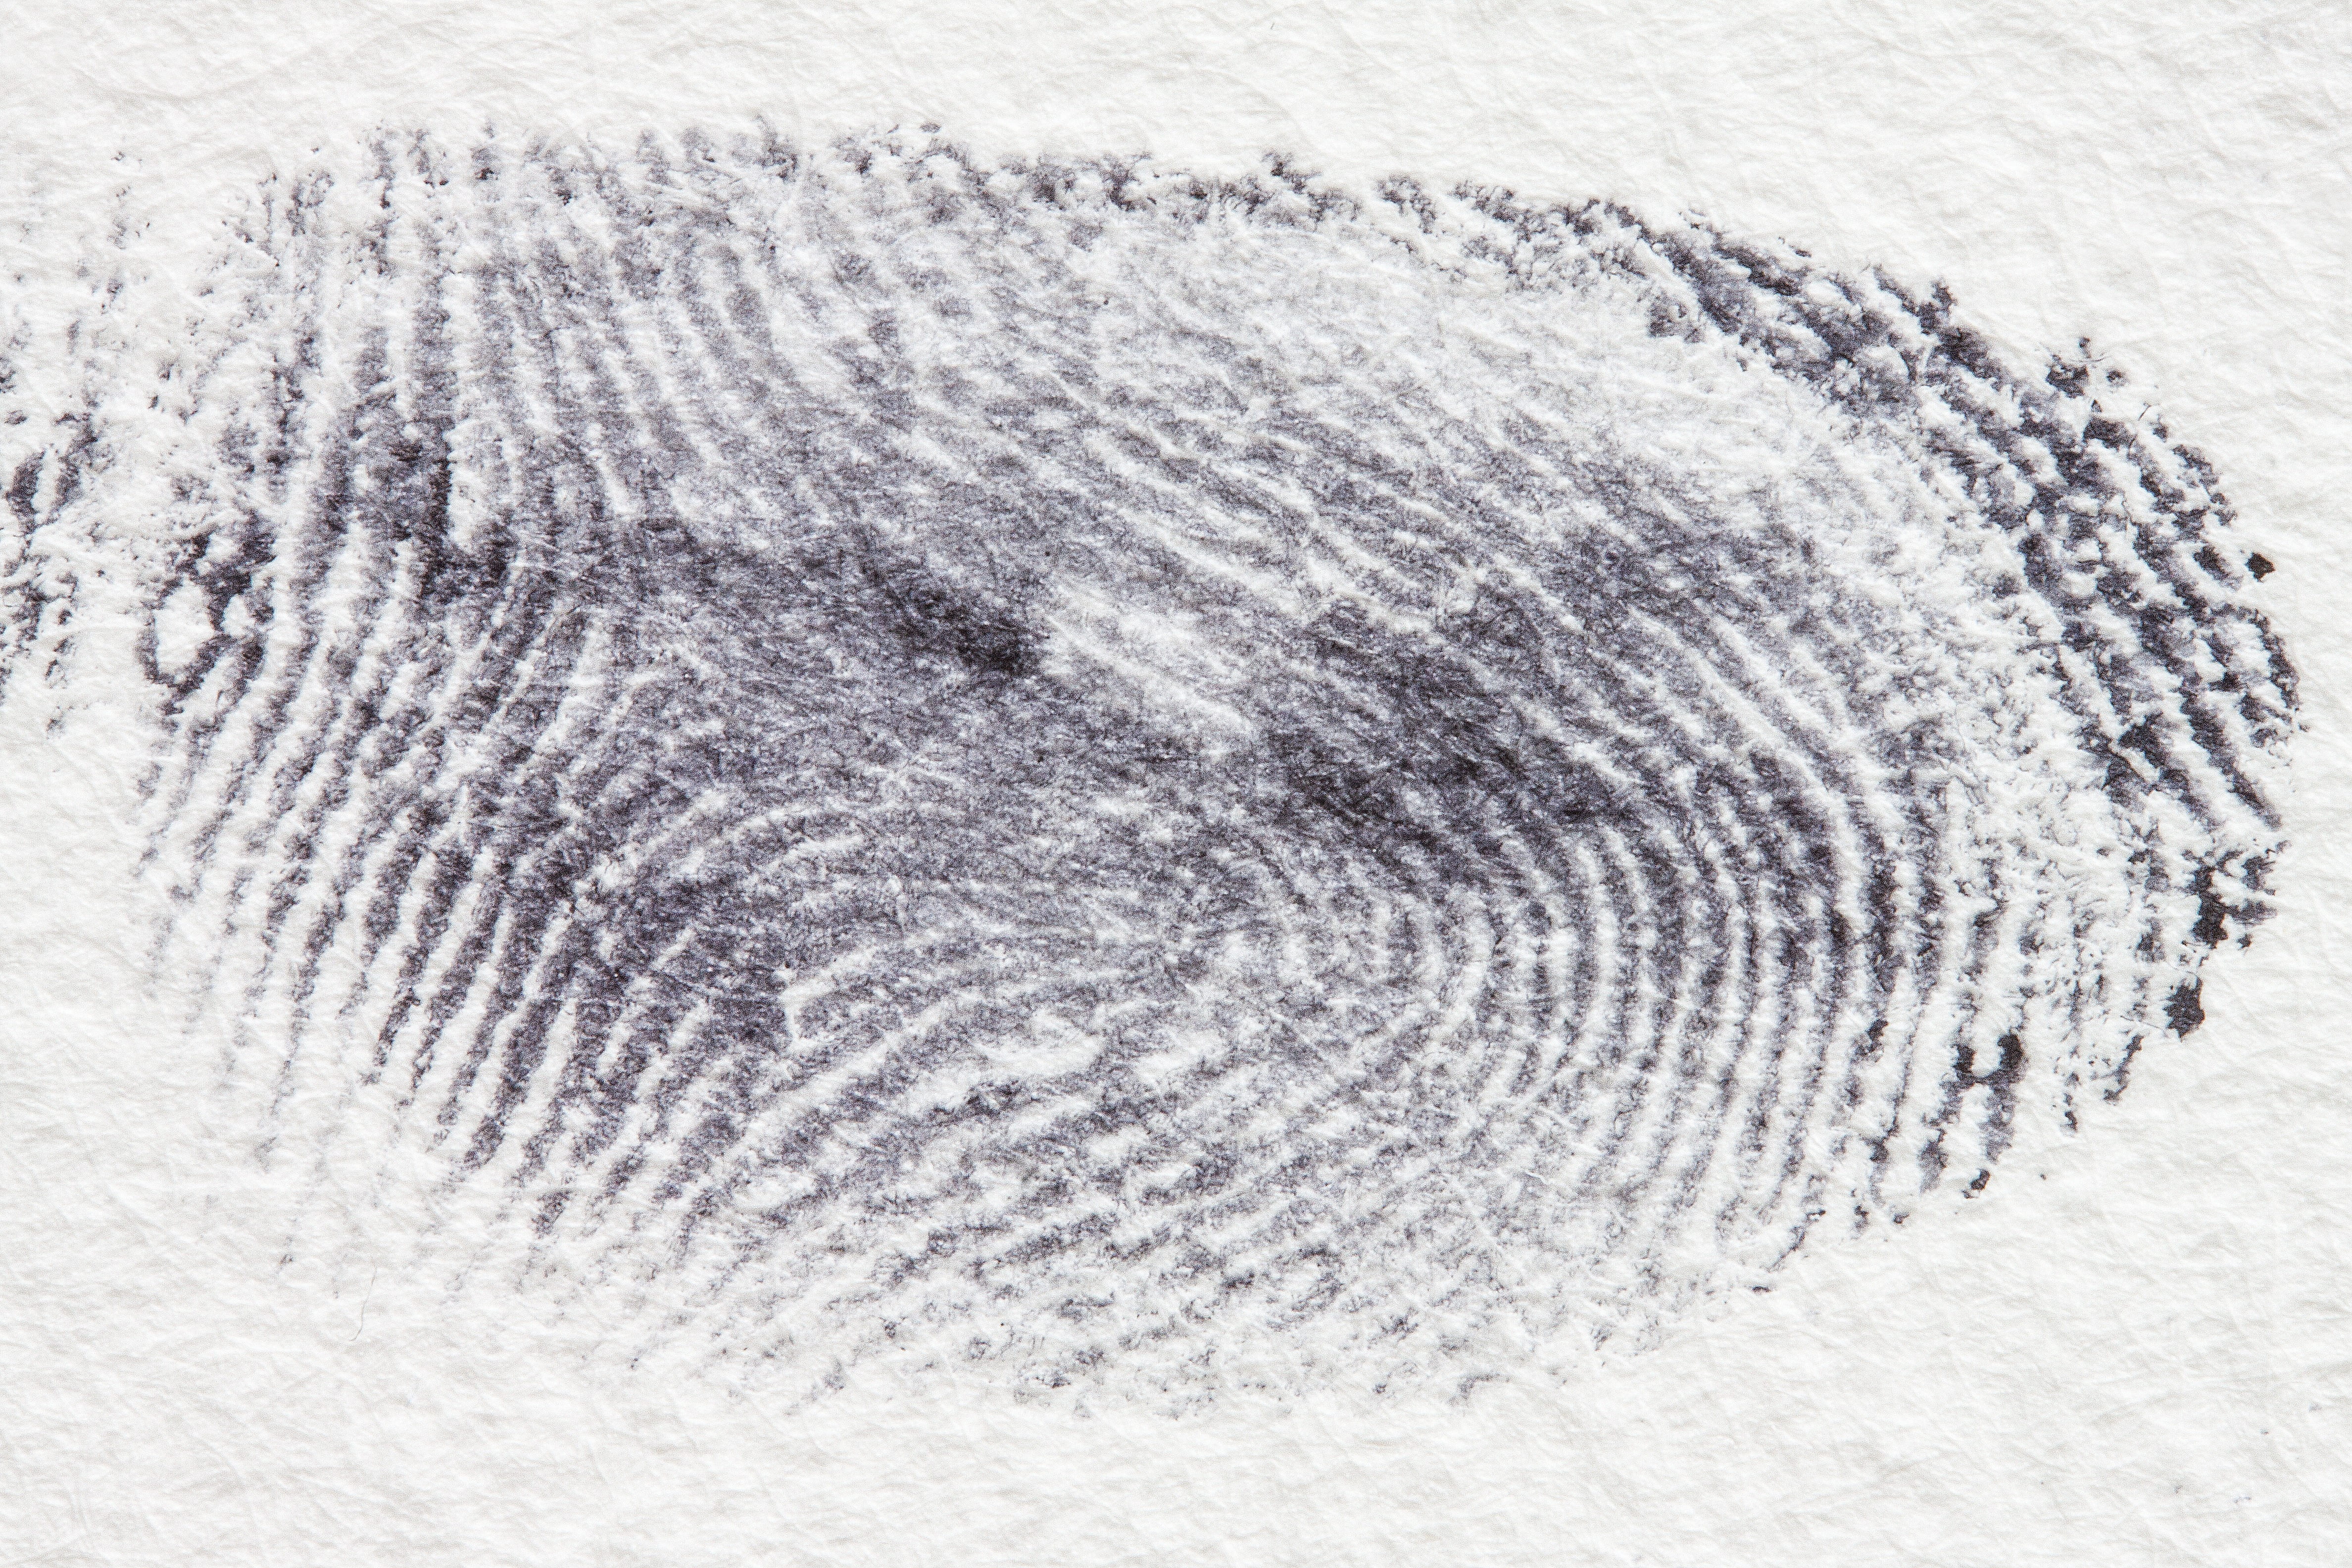 thumb print, fingerprint, daktylogramm, papillary, fingertip